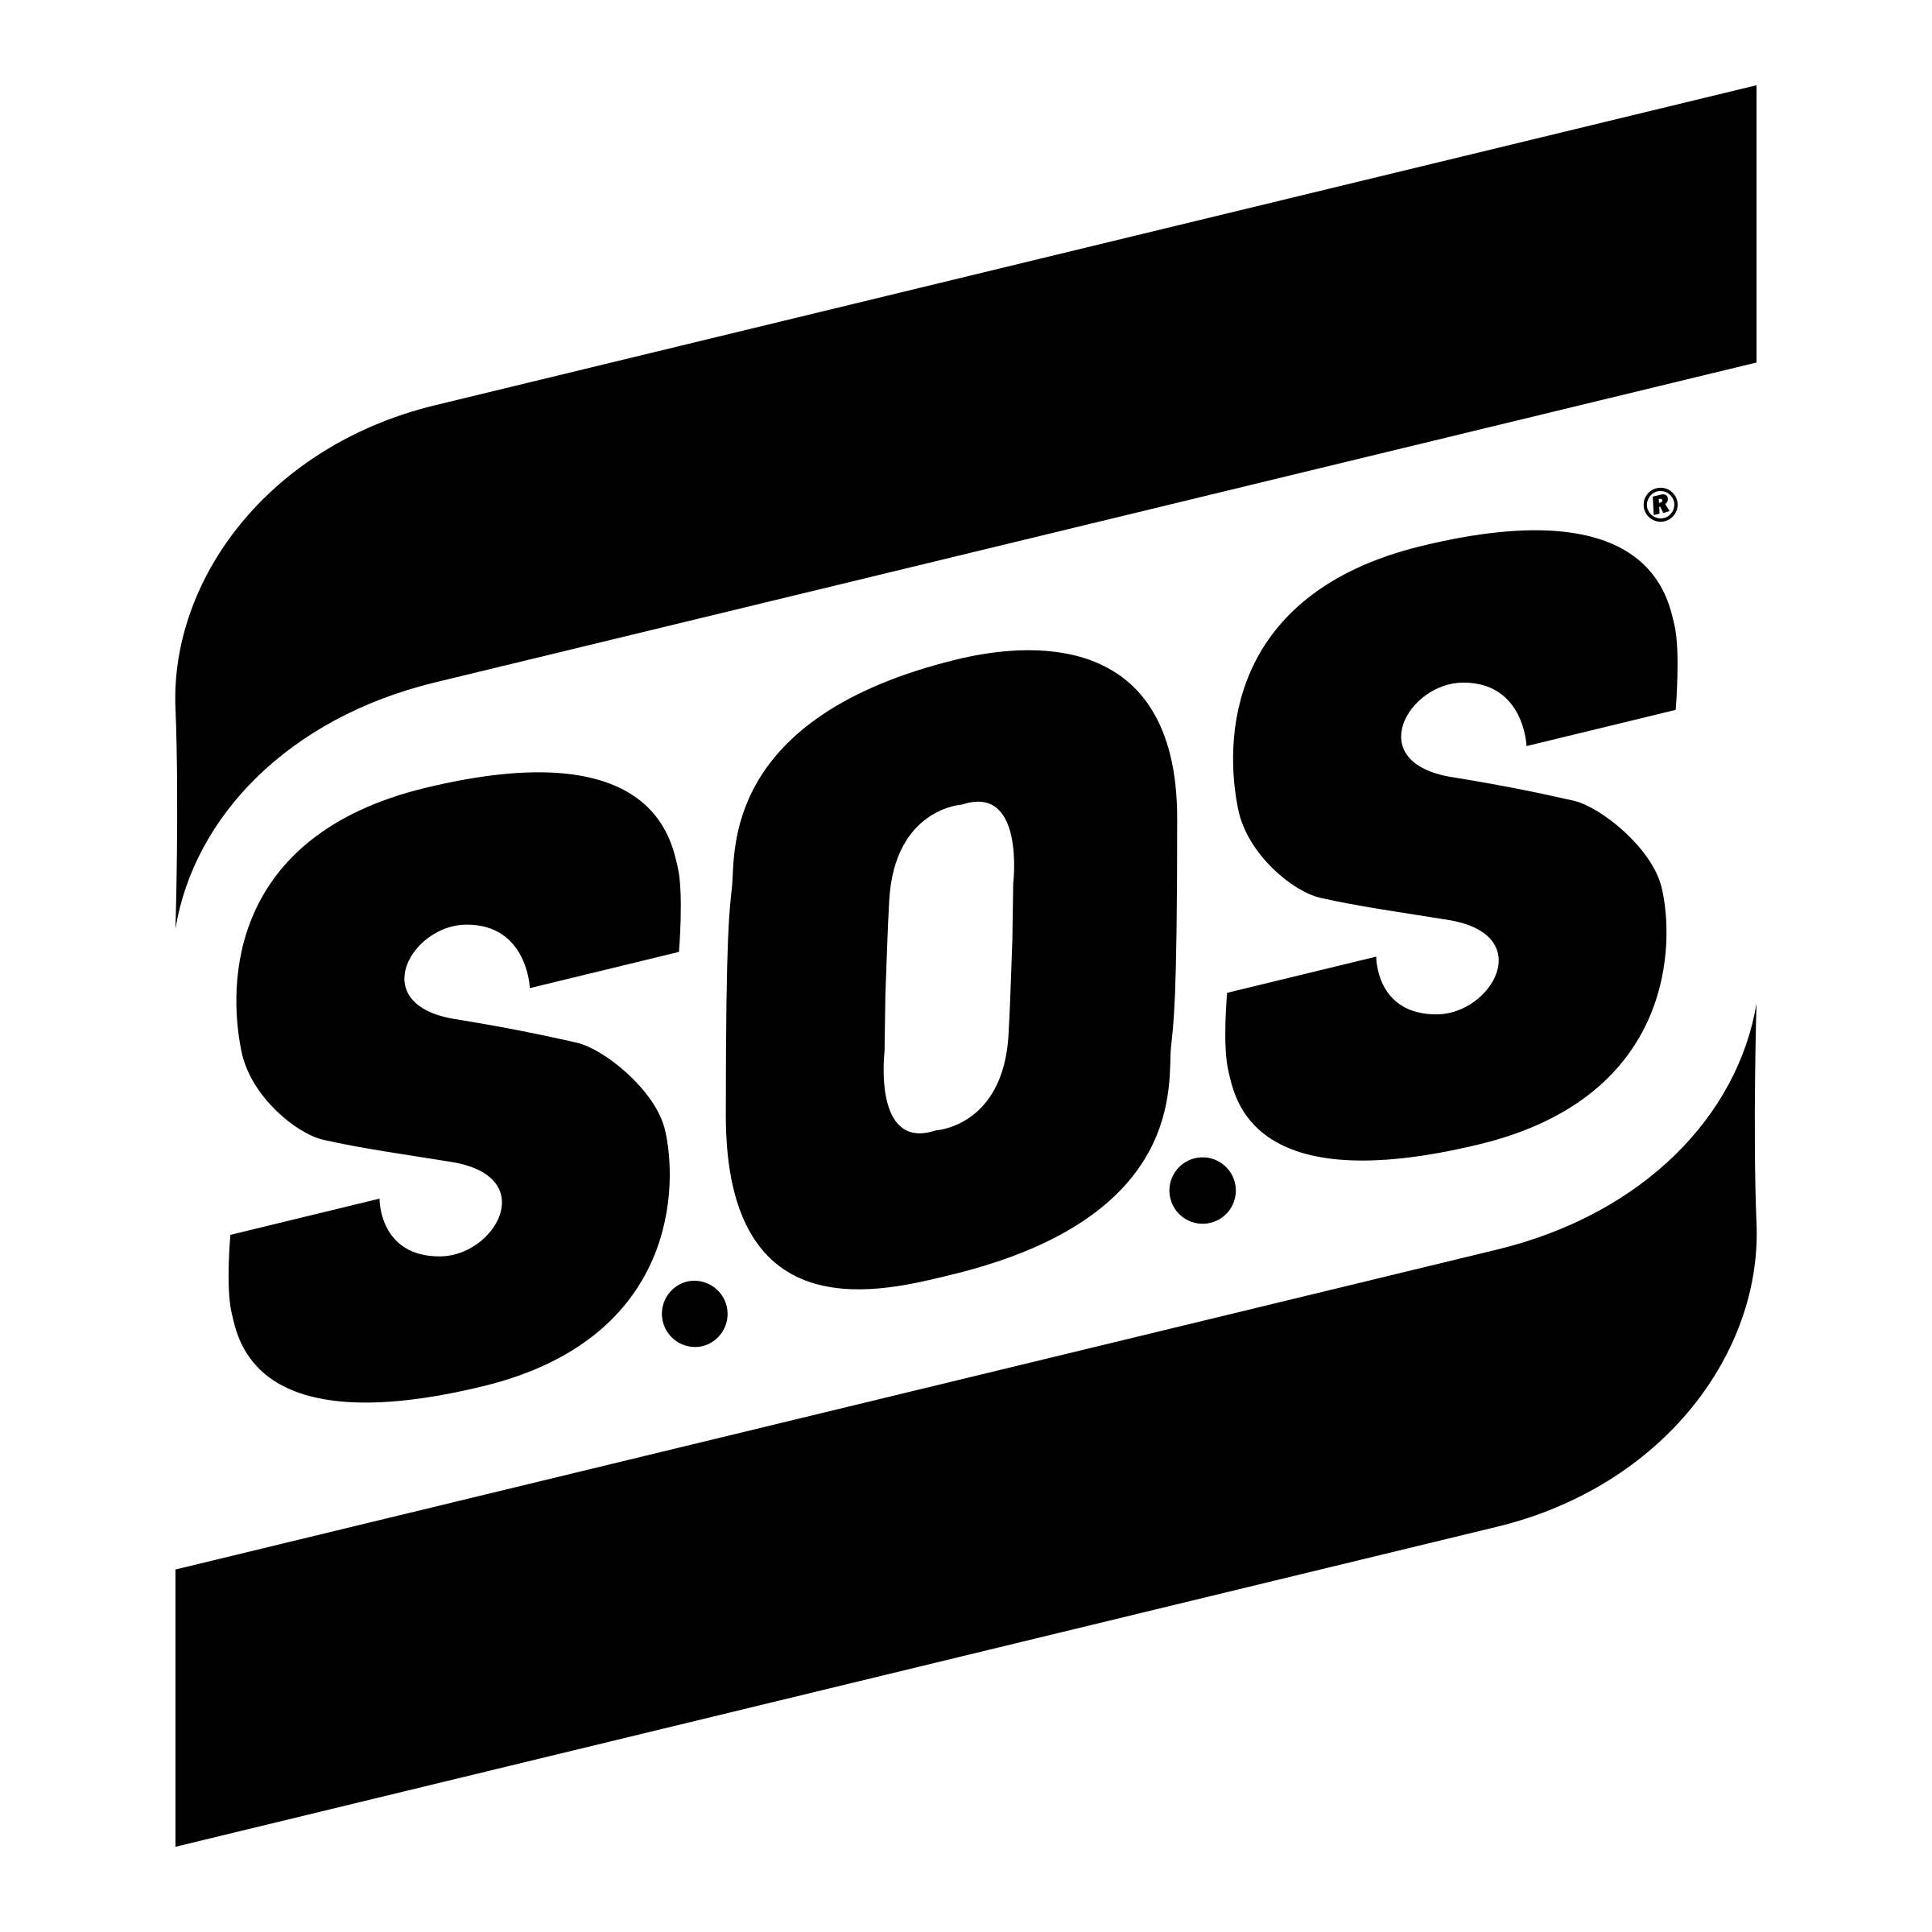 SOS Logo - SOS Logo PNG Transparent & SVG Vector